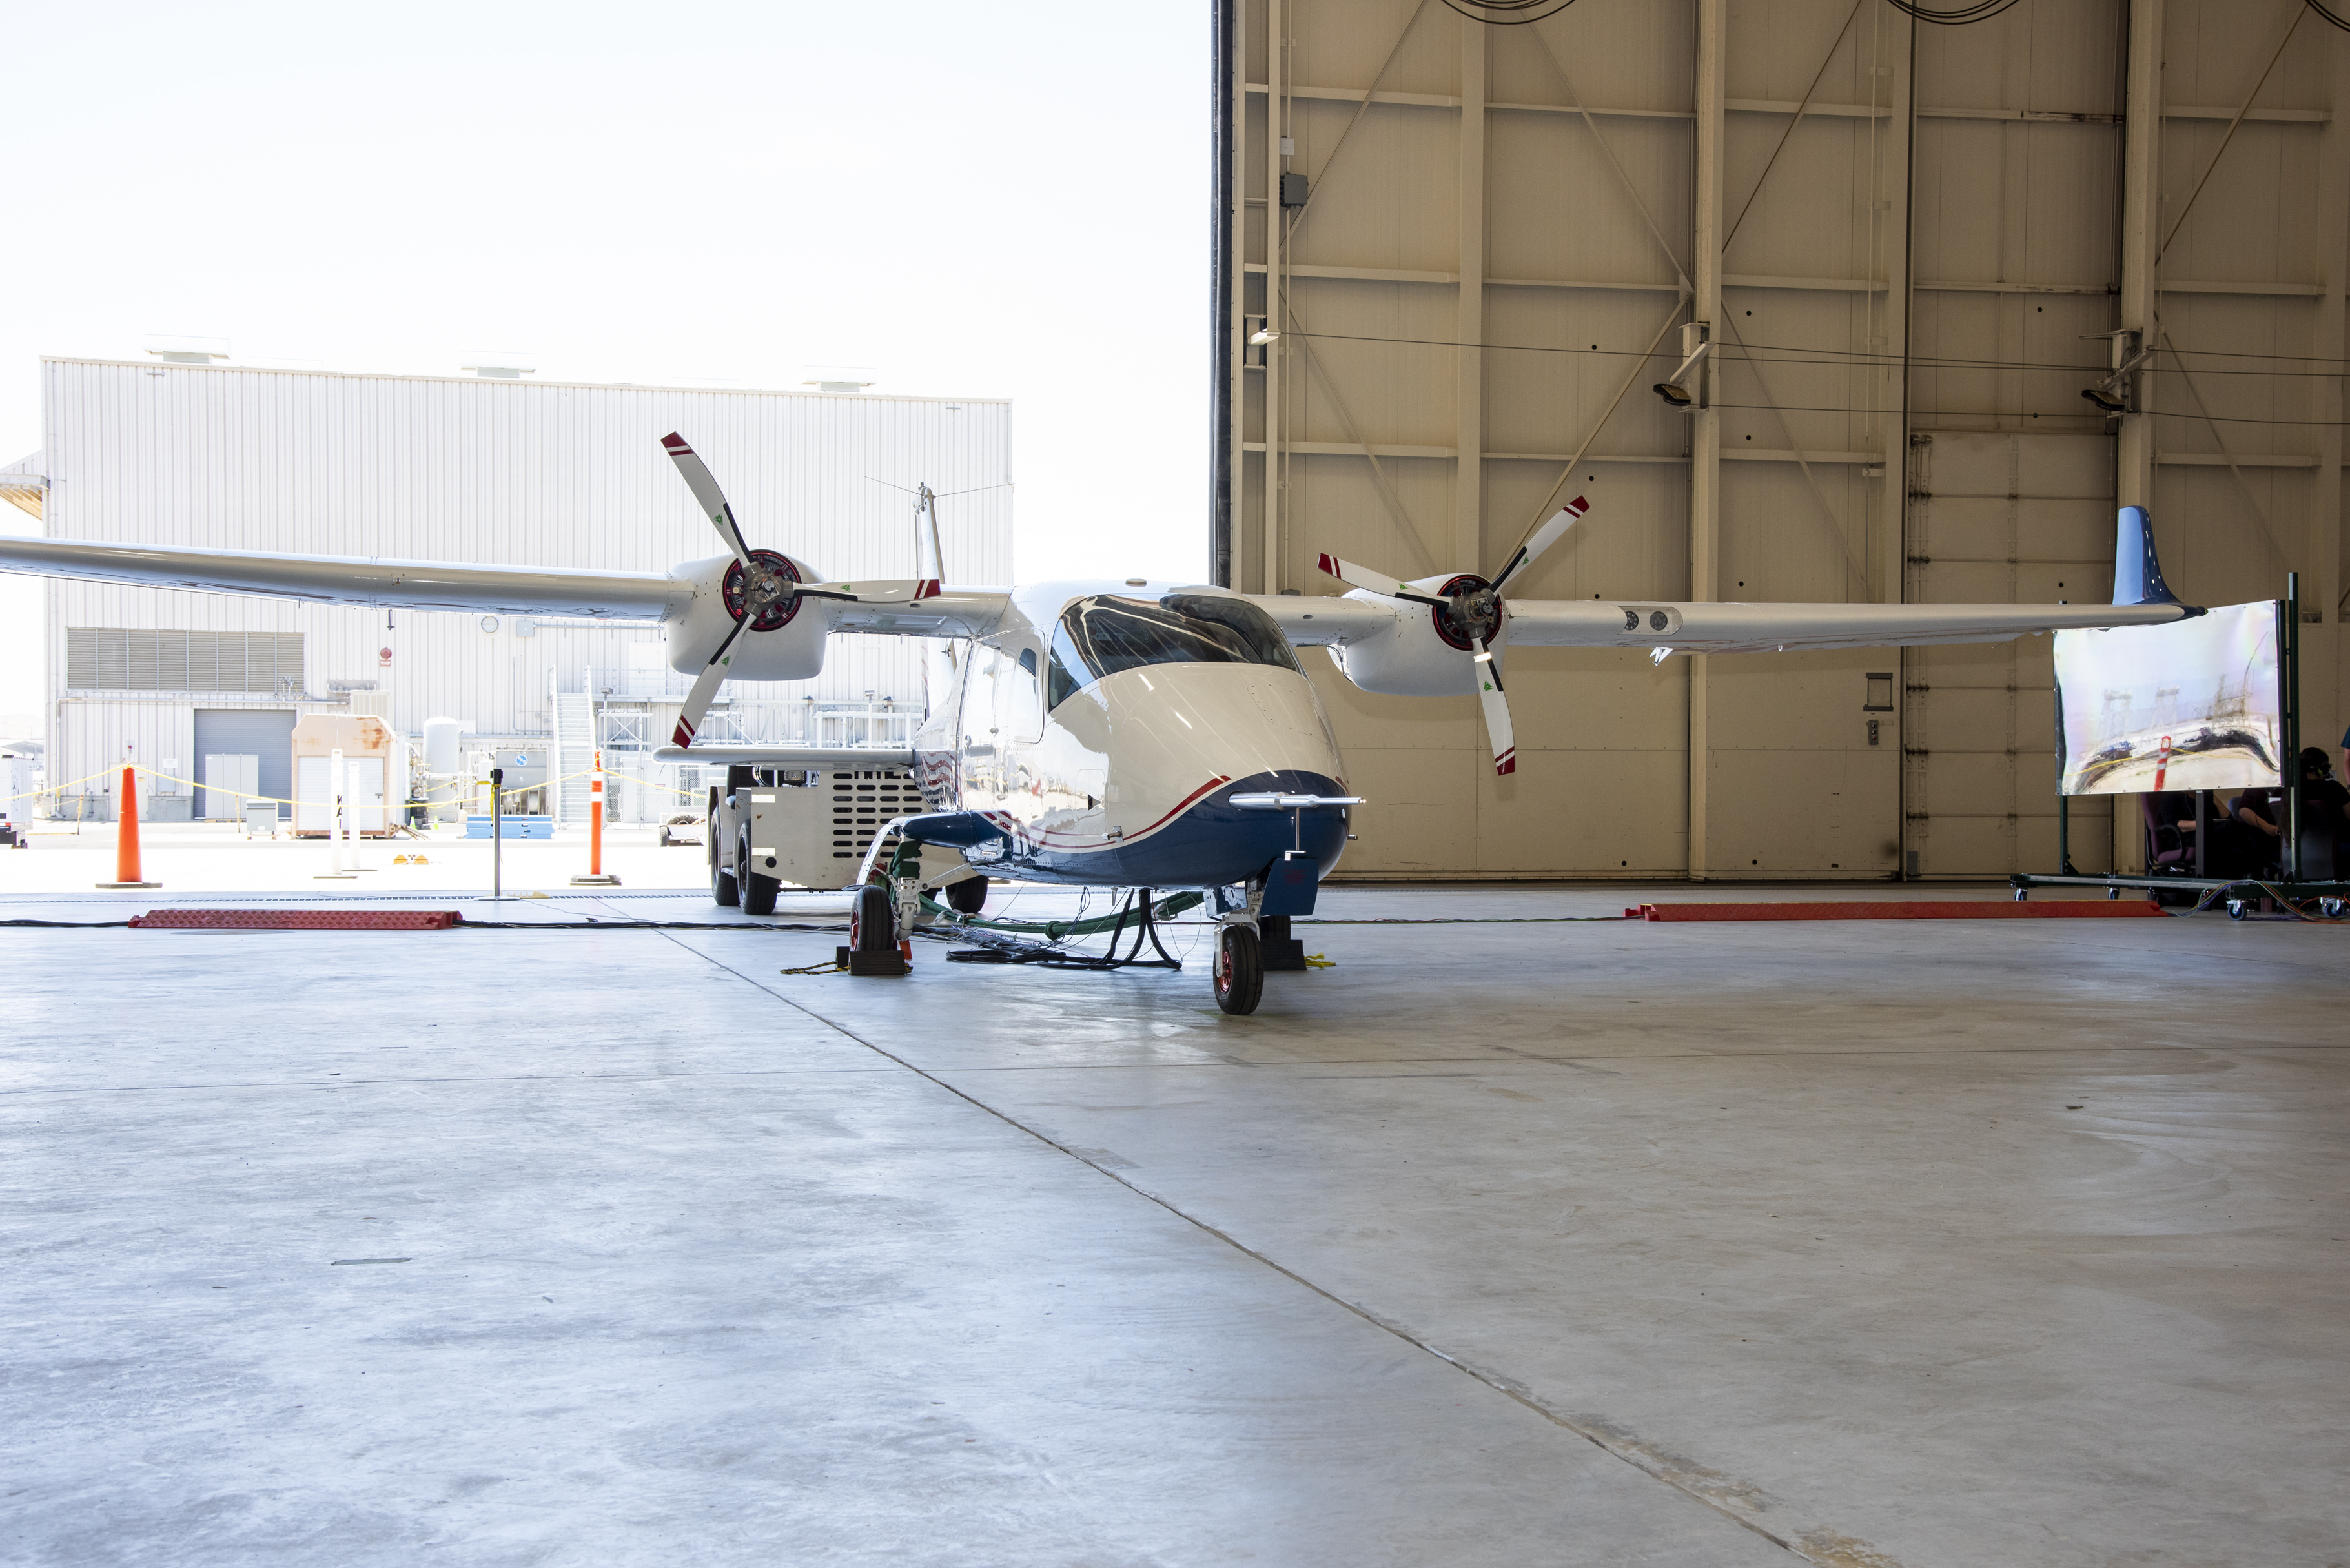 The X-57 aircraft inside a hangar with the hangar door open.